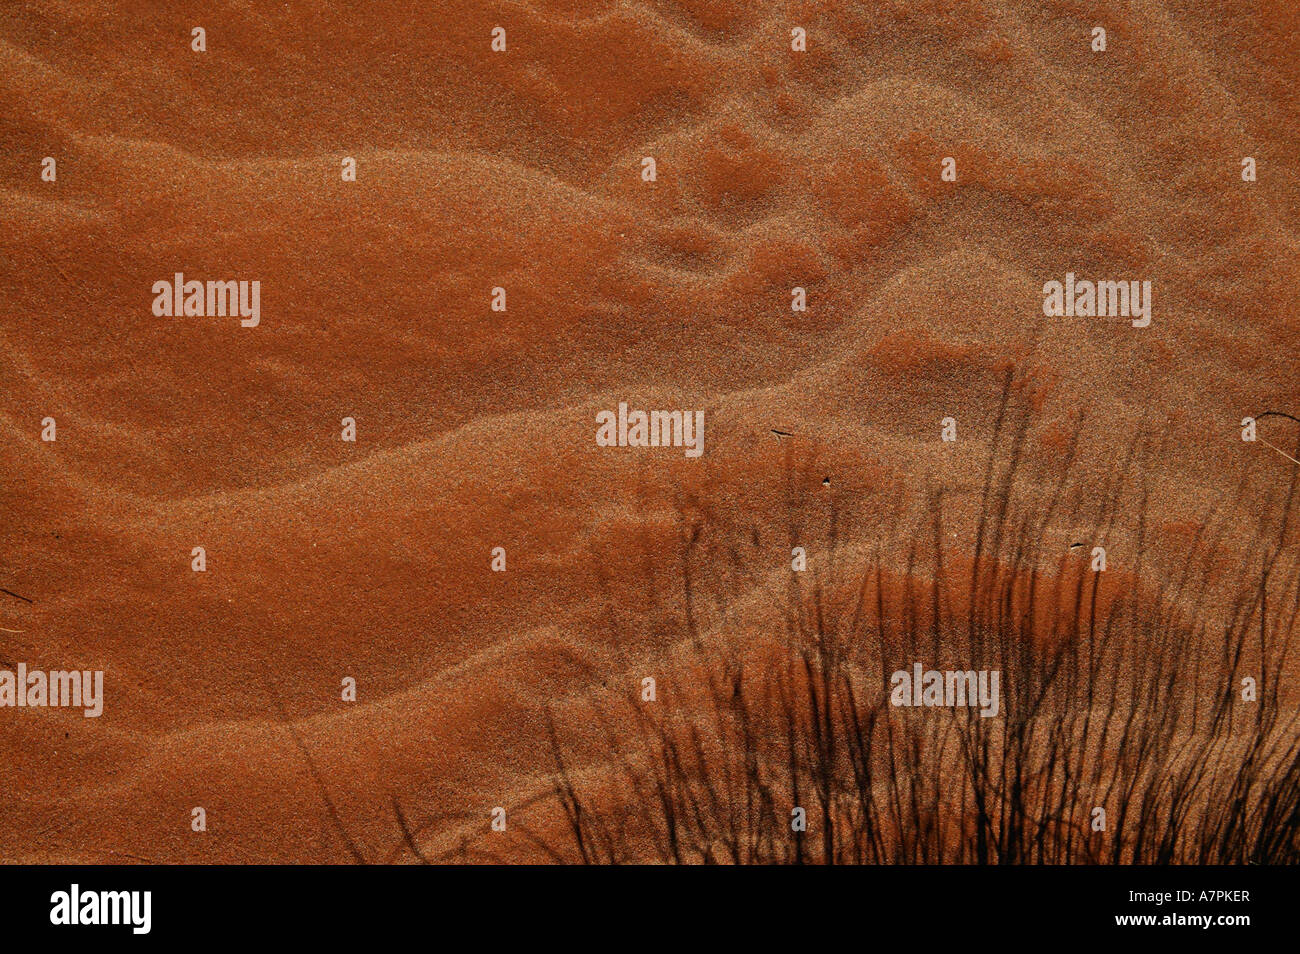 Vent de sable soufflé avec du gazon ombre Namibrand Nature Reserve La Namibie Banque D'Images